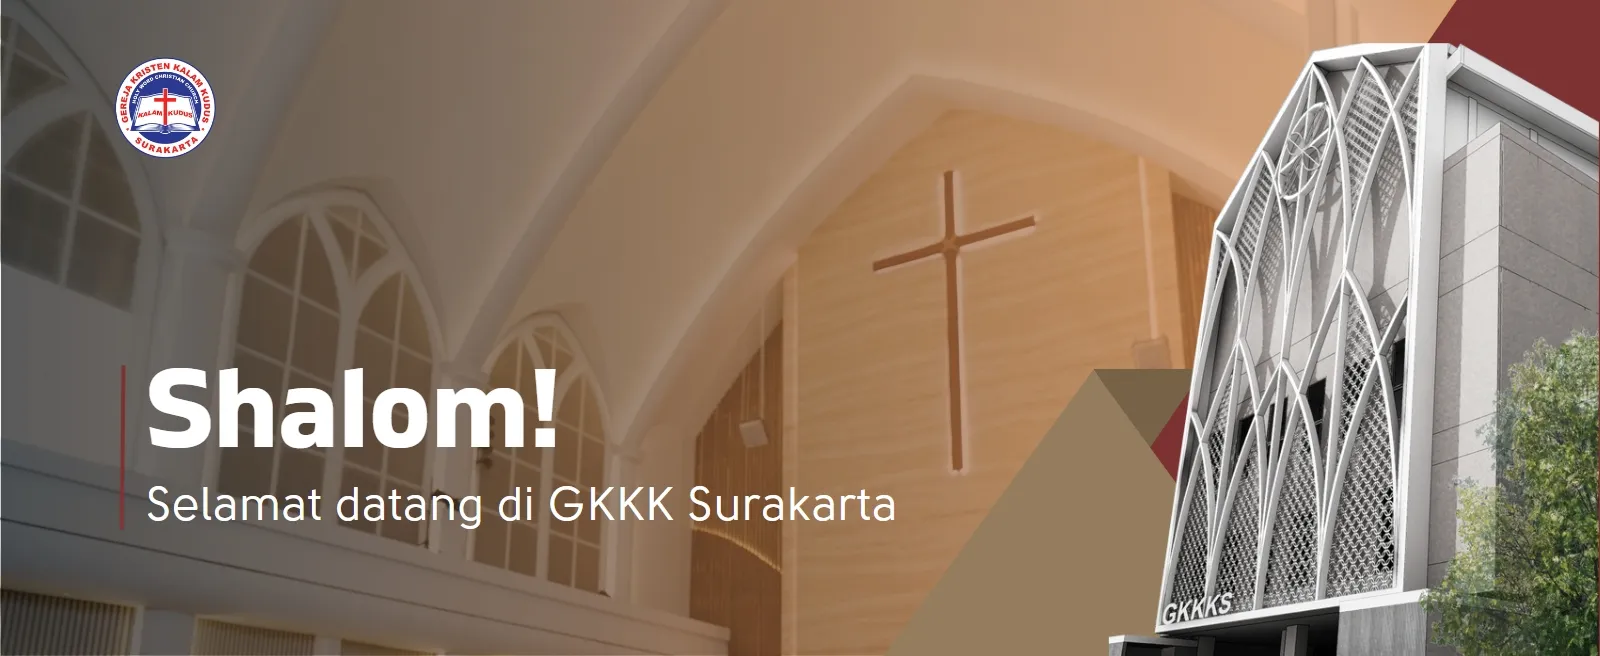 welcome-gkkk